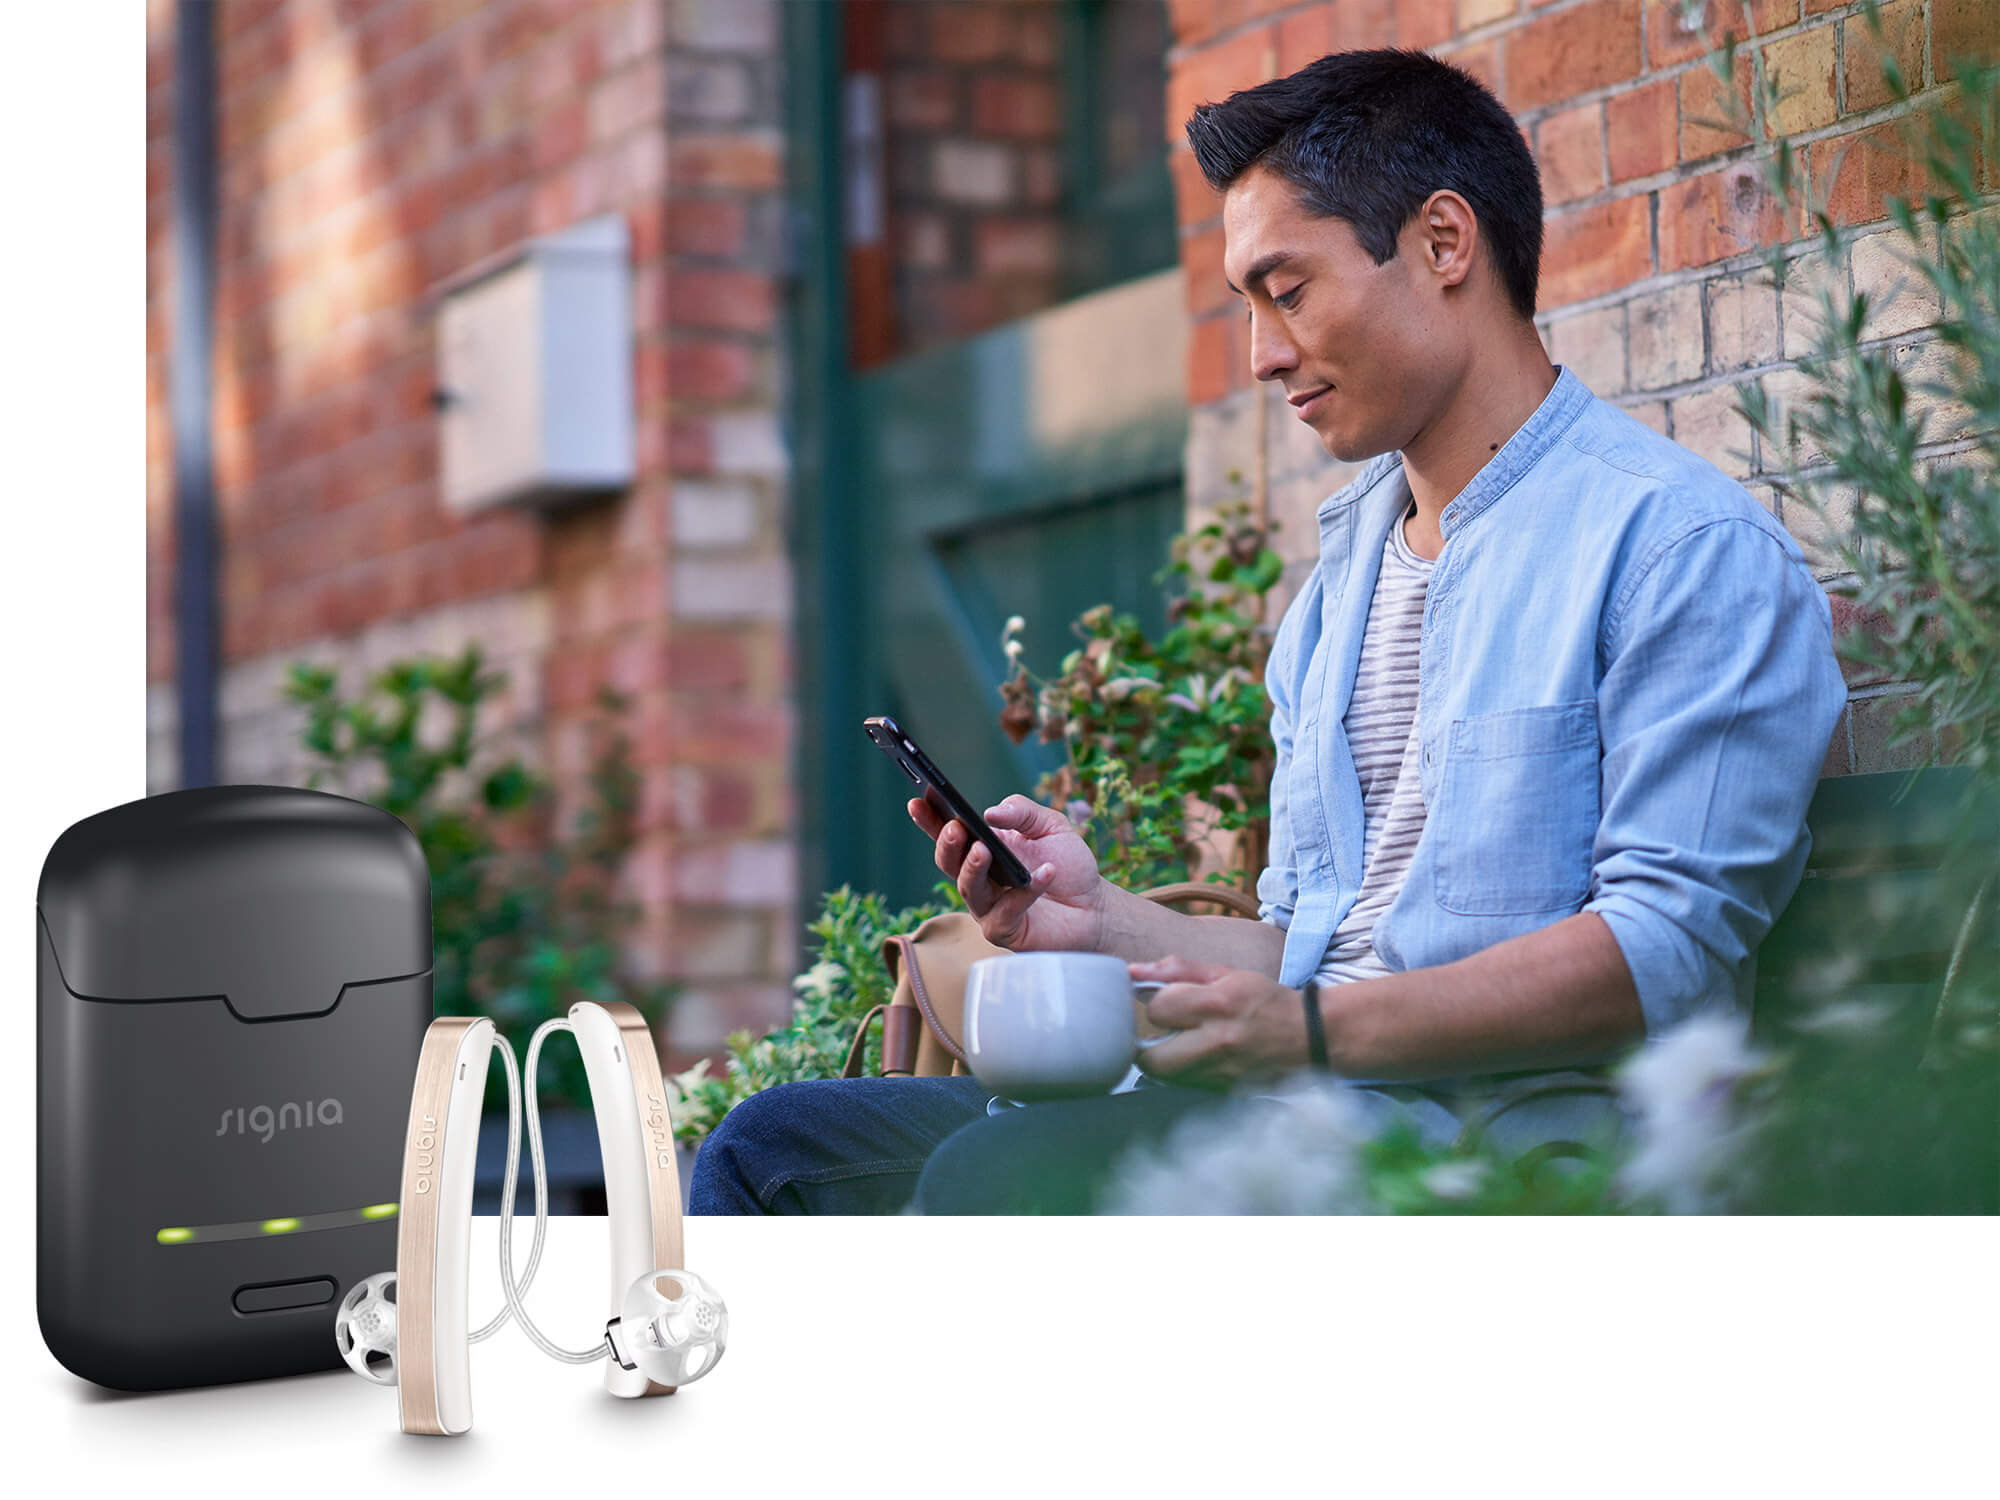 魅影的锂电池充电技术，拥有便携、纤细的充电仓，让您随行充电，持续佩戴一整天。